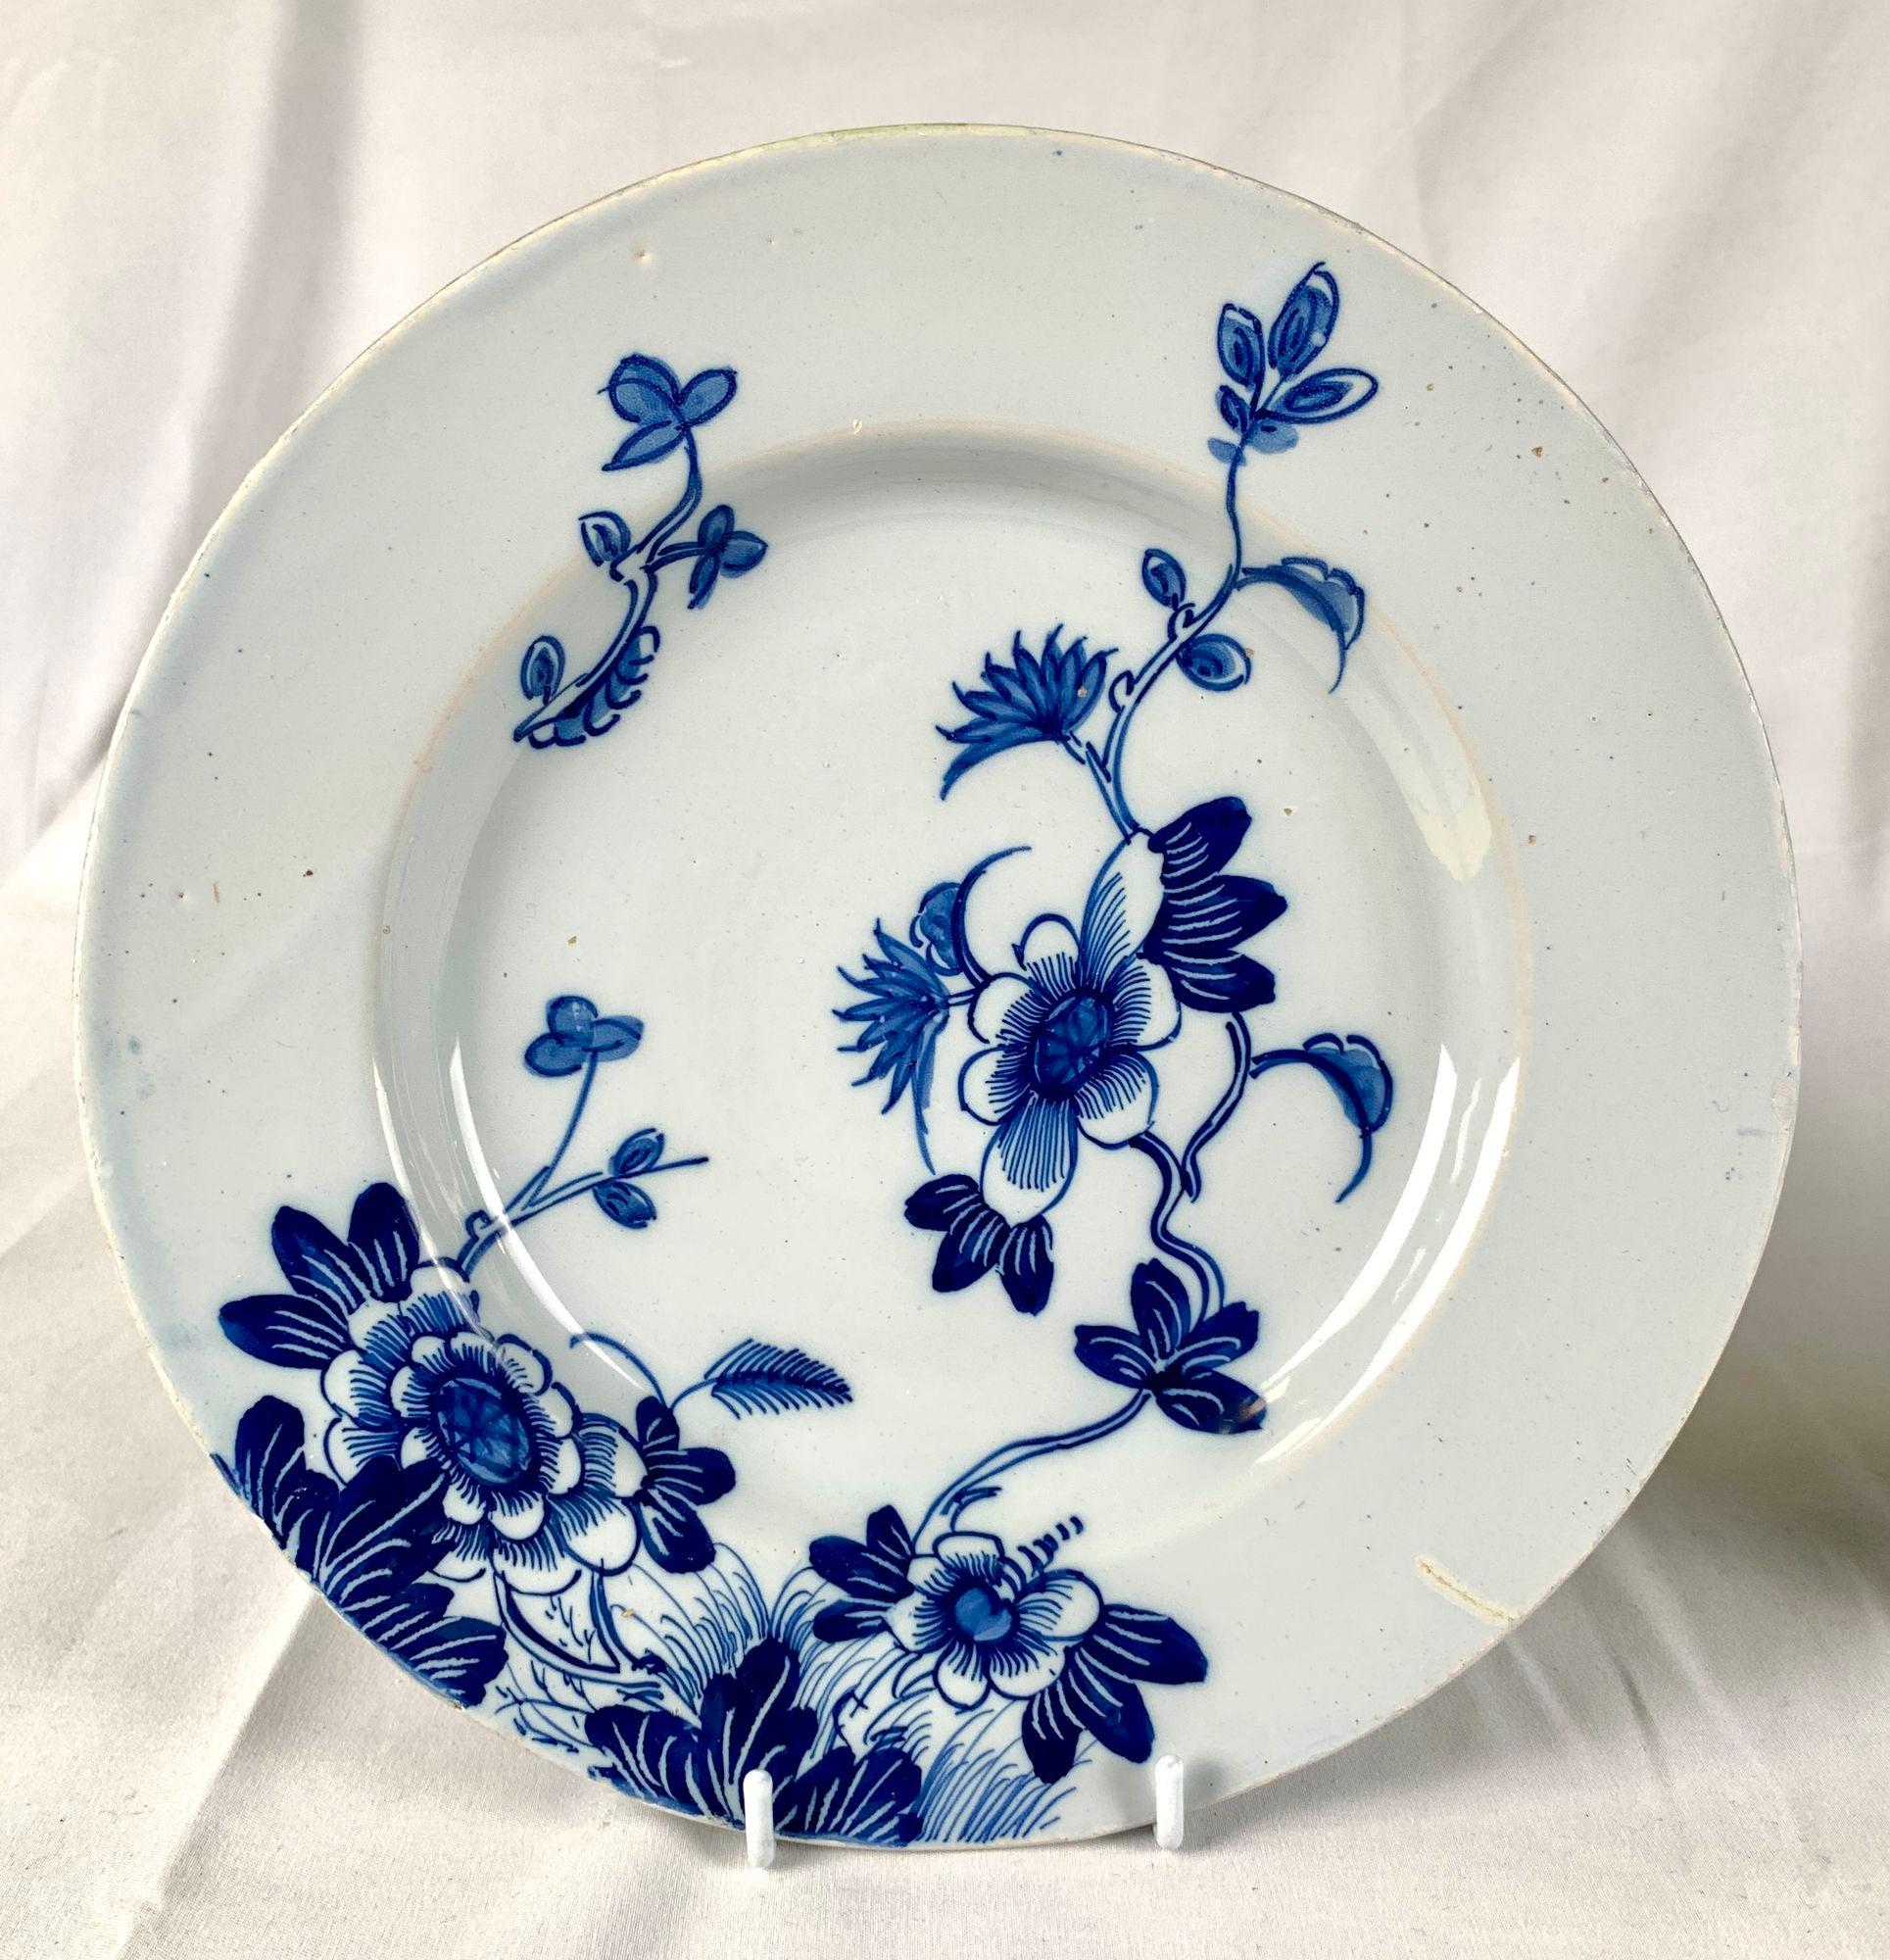 Dieses prächtige Paar blau-weißer englischer Delft-Teller wurde um 1760 in Bristol, England, hergestellt.
Die hübsche Blumendekoration ist von Hand in kobaltblauen Farbtönen auf hellkobaltblauem Grund gemalt.
Eine Blüte an der Ranke erstreckt sich